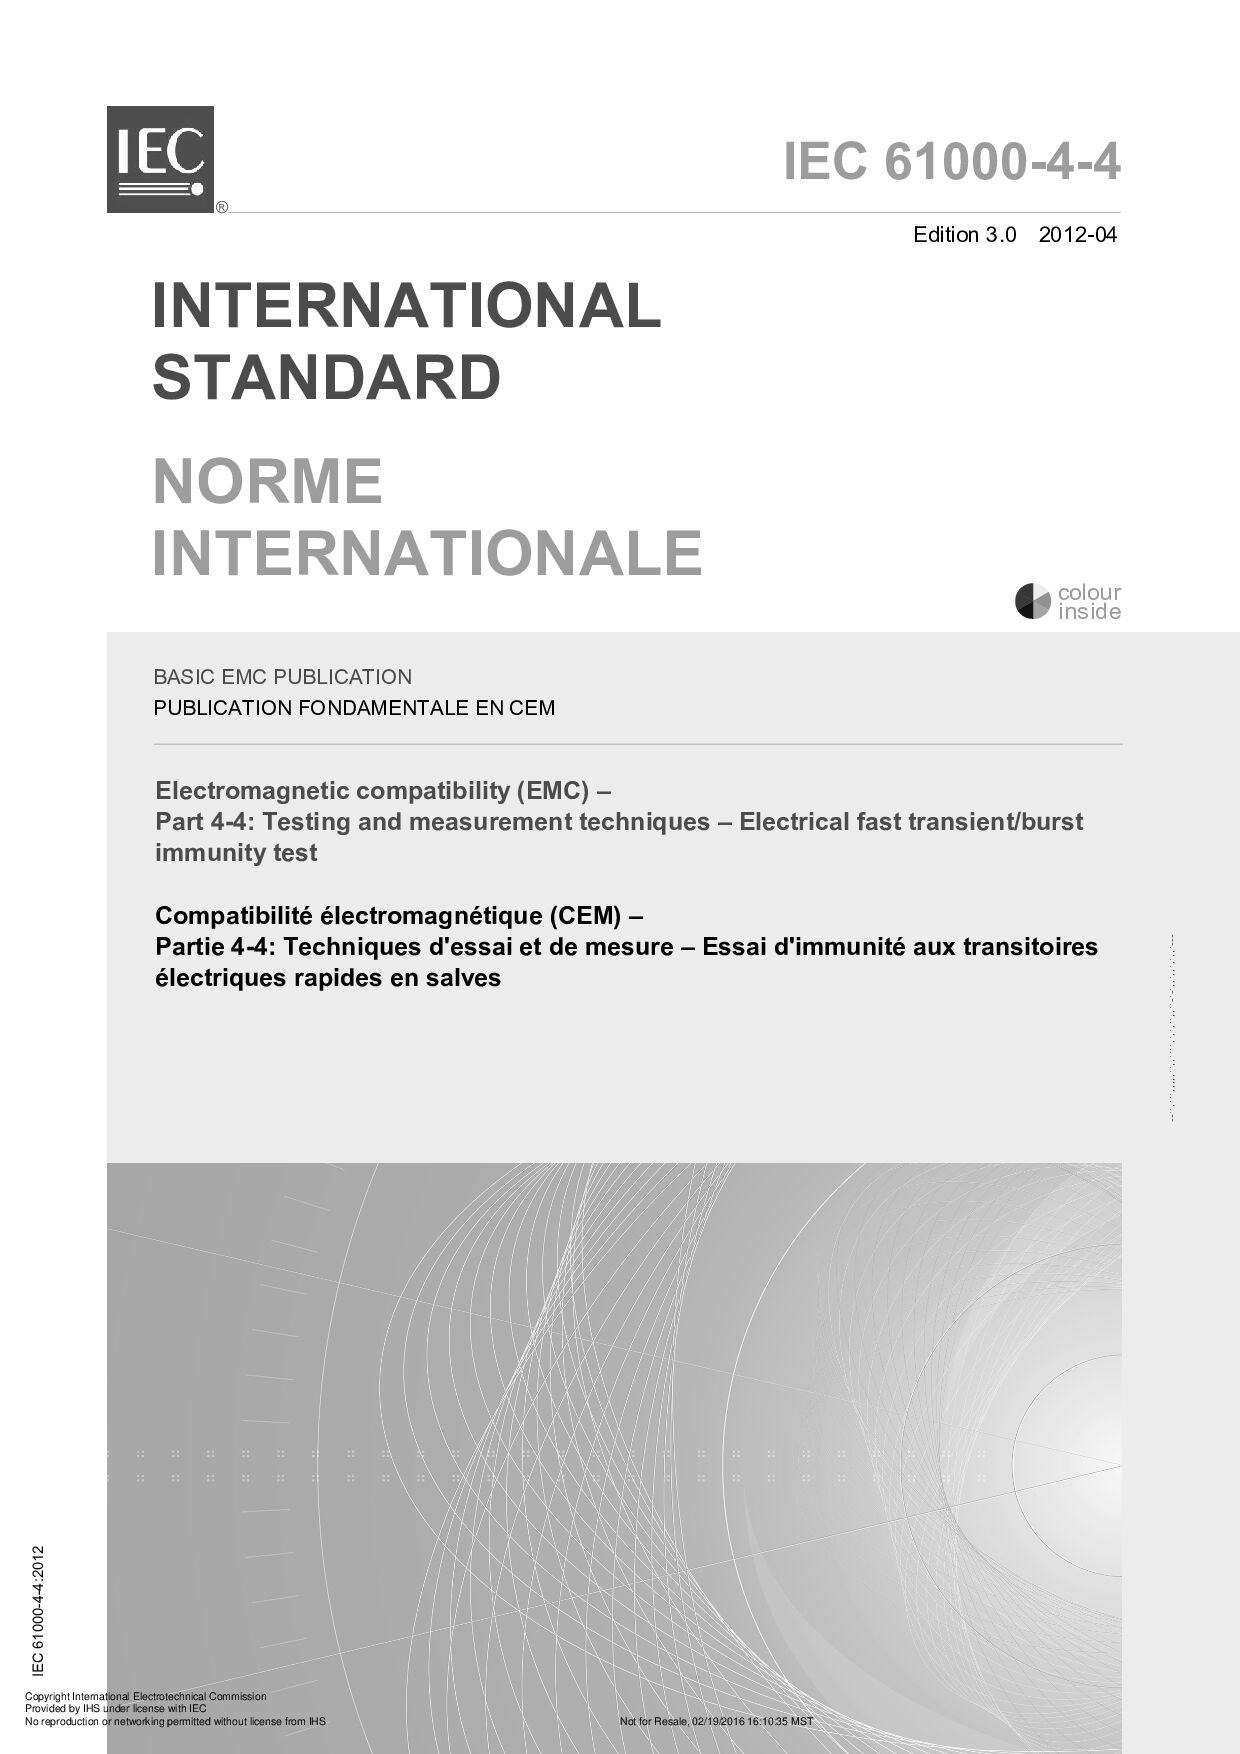 IEC 61000-4-4:2012封面图